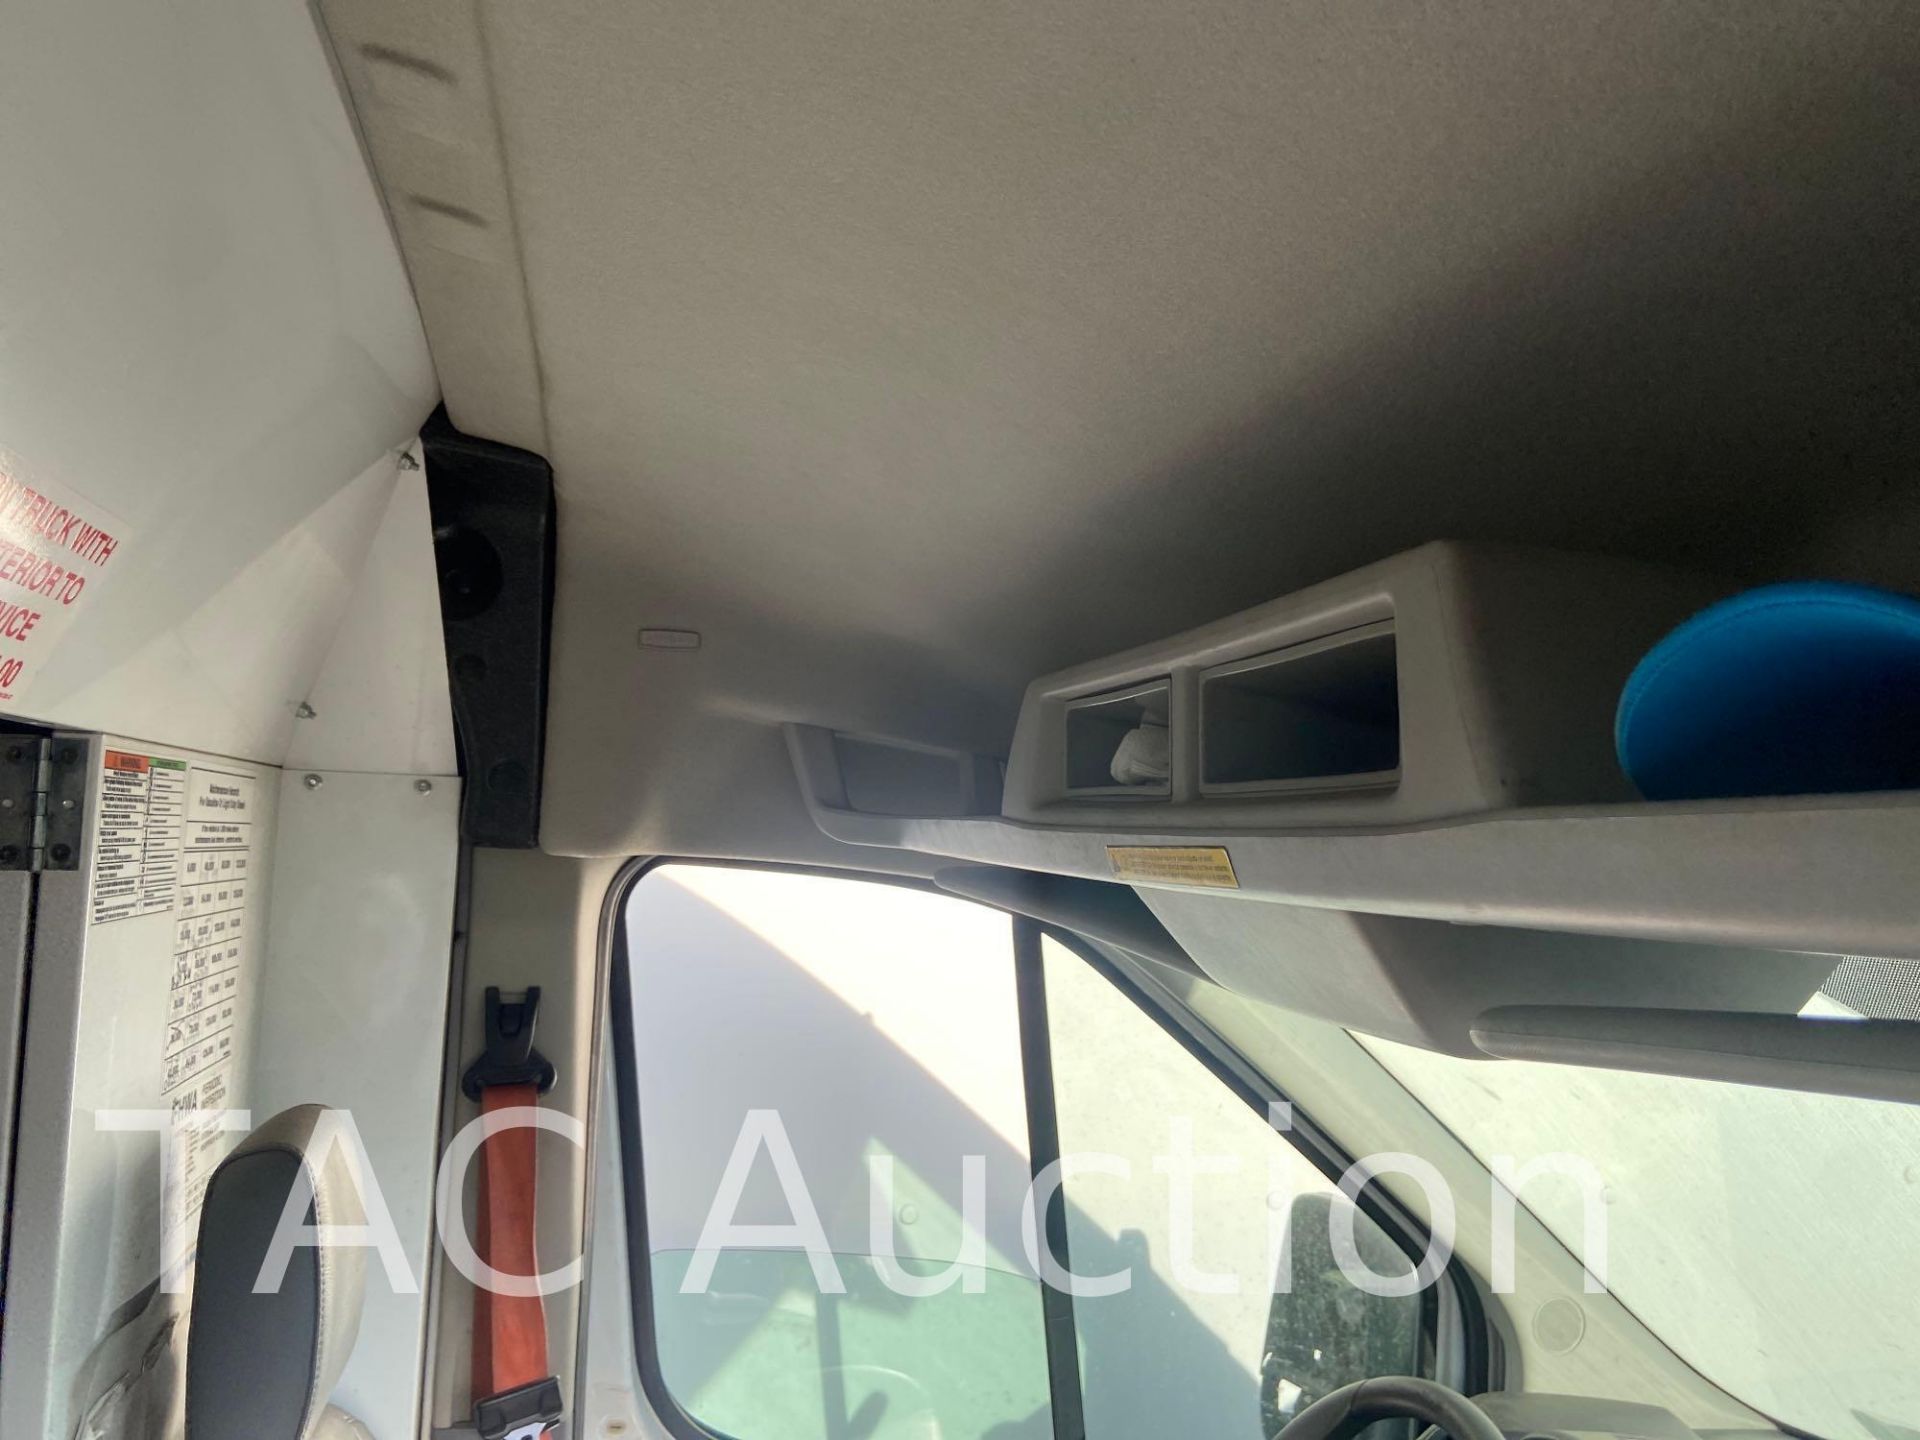 2019 Ford Transit 150 Cargo Van - Image 102 of 133